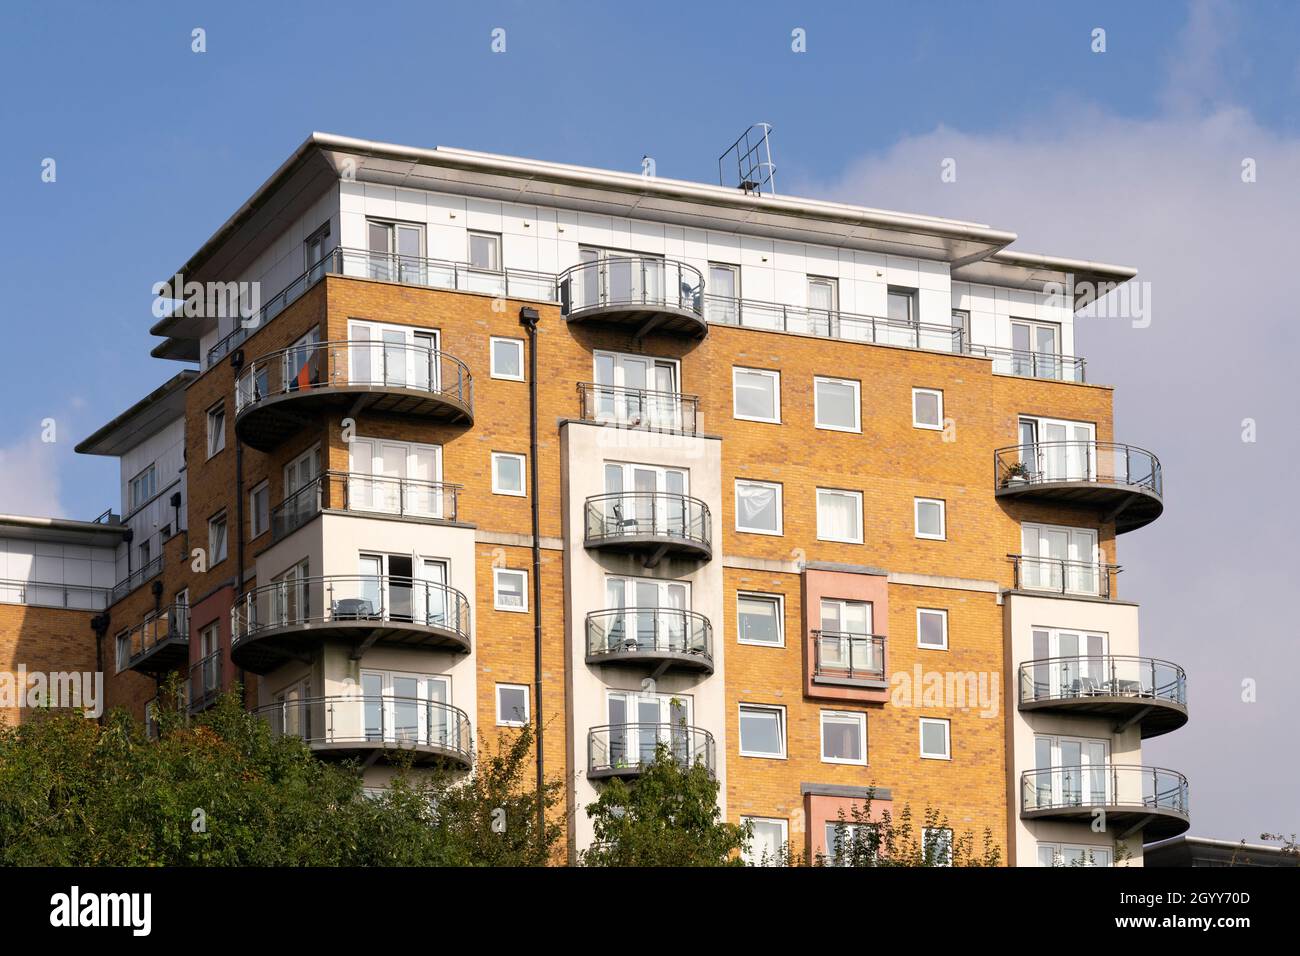 Blocchi di appartamenti in Winterthur Way che necessitano di rivestimenti in alluminio composito e terrazze in legno da sostituire per timori di rischio di incendio. Basingstoke, Regno Unito Foto Stock